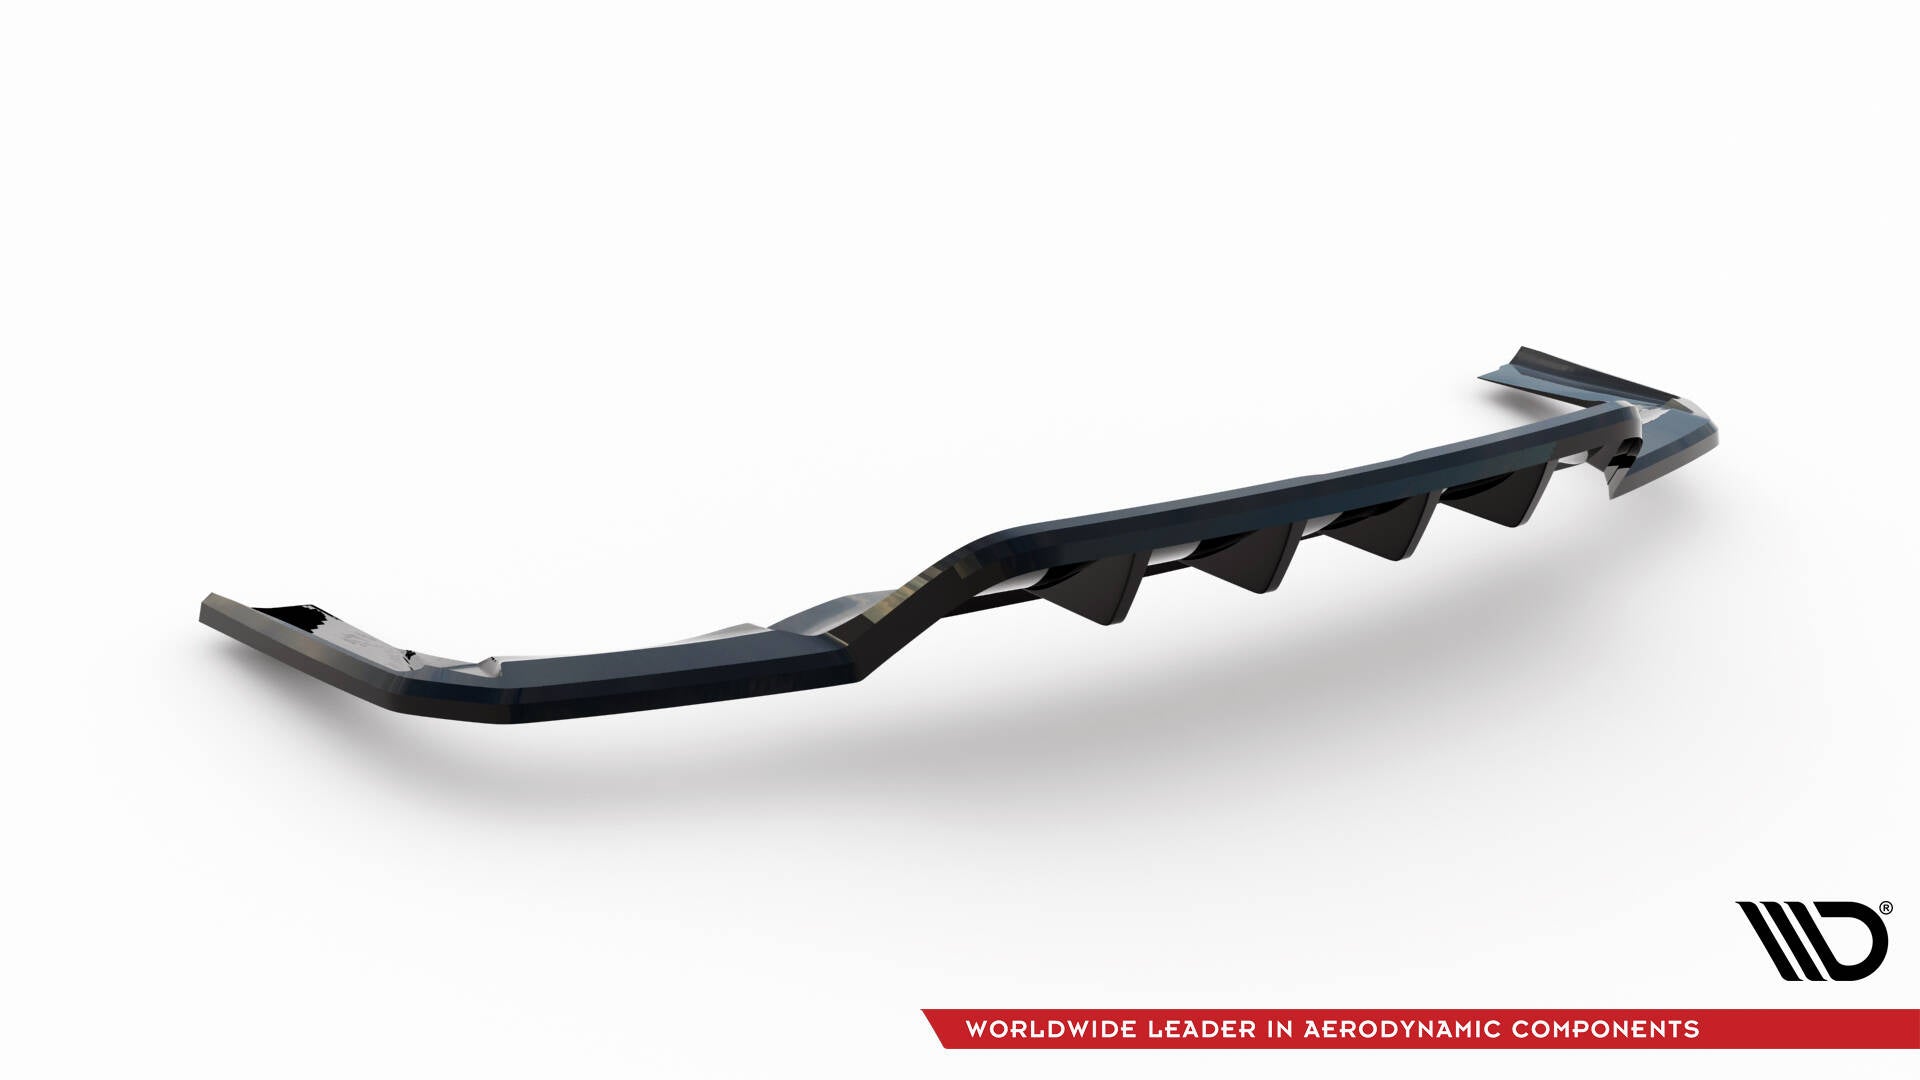 Central Rear Splitter (with vertical bars) Maserati Levante Trofeo Mk1